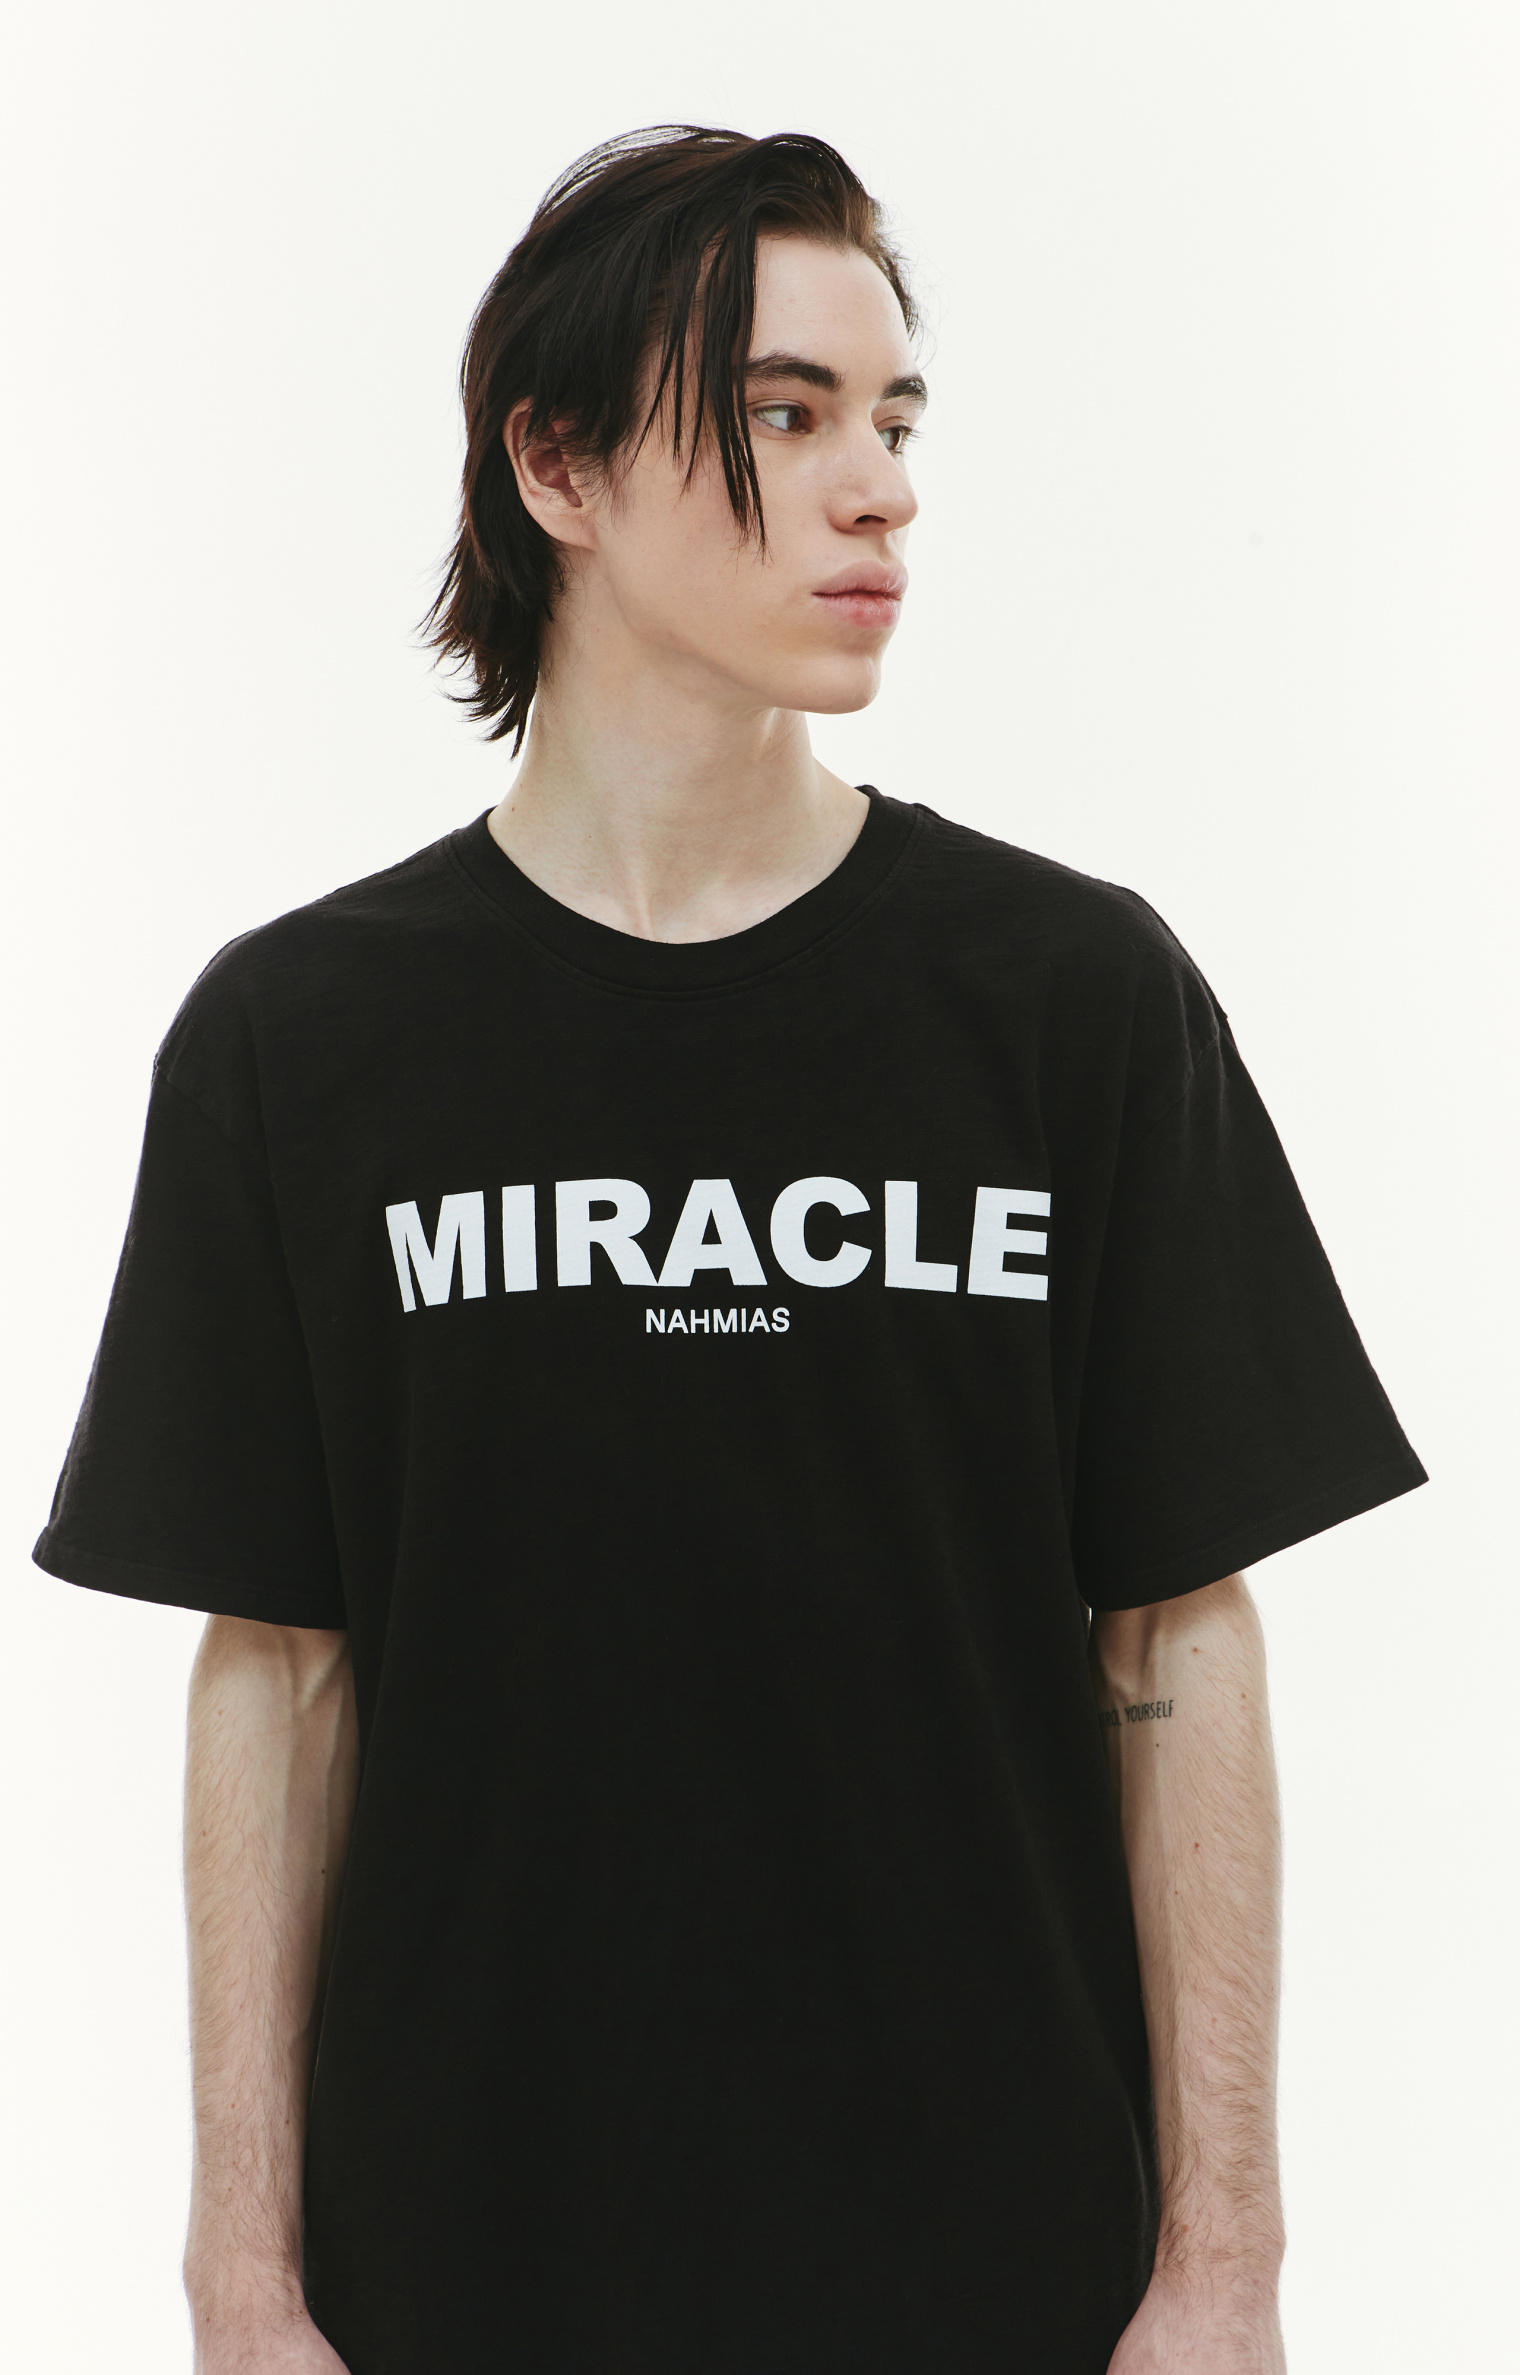 Nahmias Miracle printed t-shirt